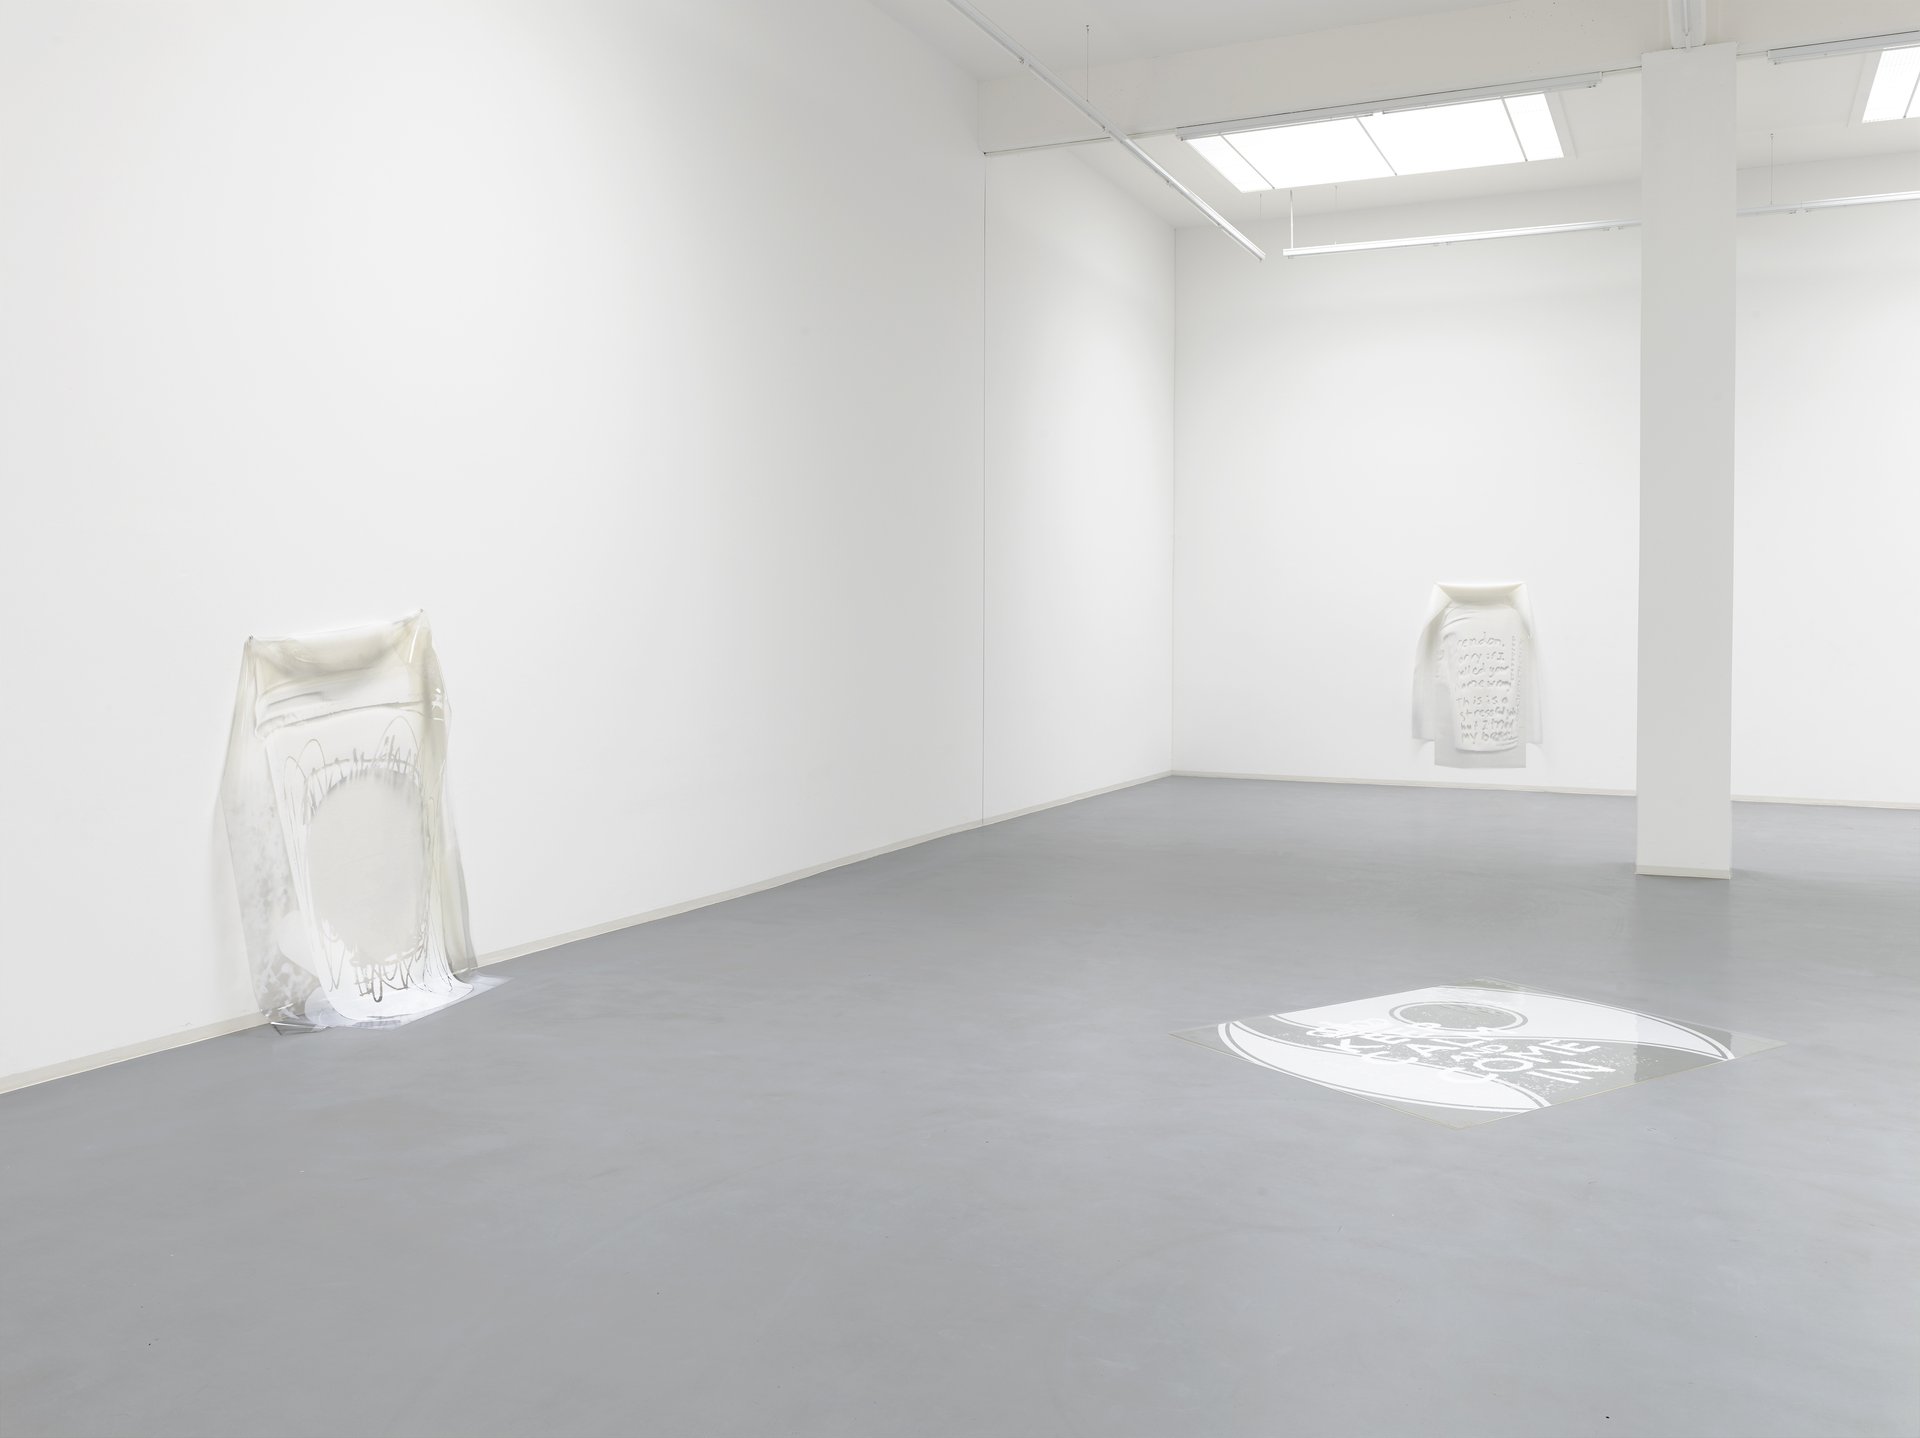 Alexander Bornschein, o.T., installation view, 2015, Bonner Kunstverein. Courtesy the artist. Photo: Simon Vogel